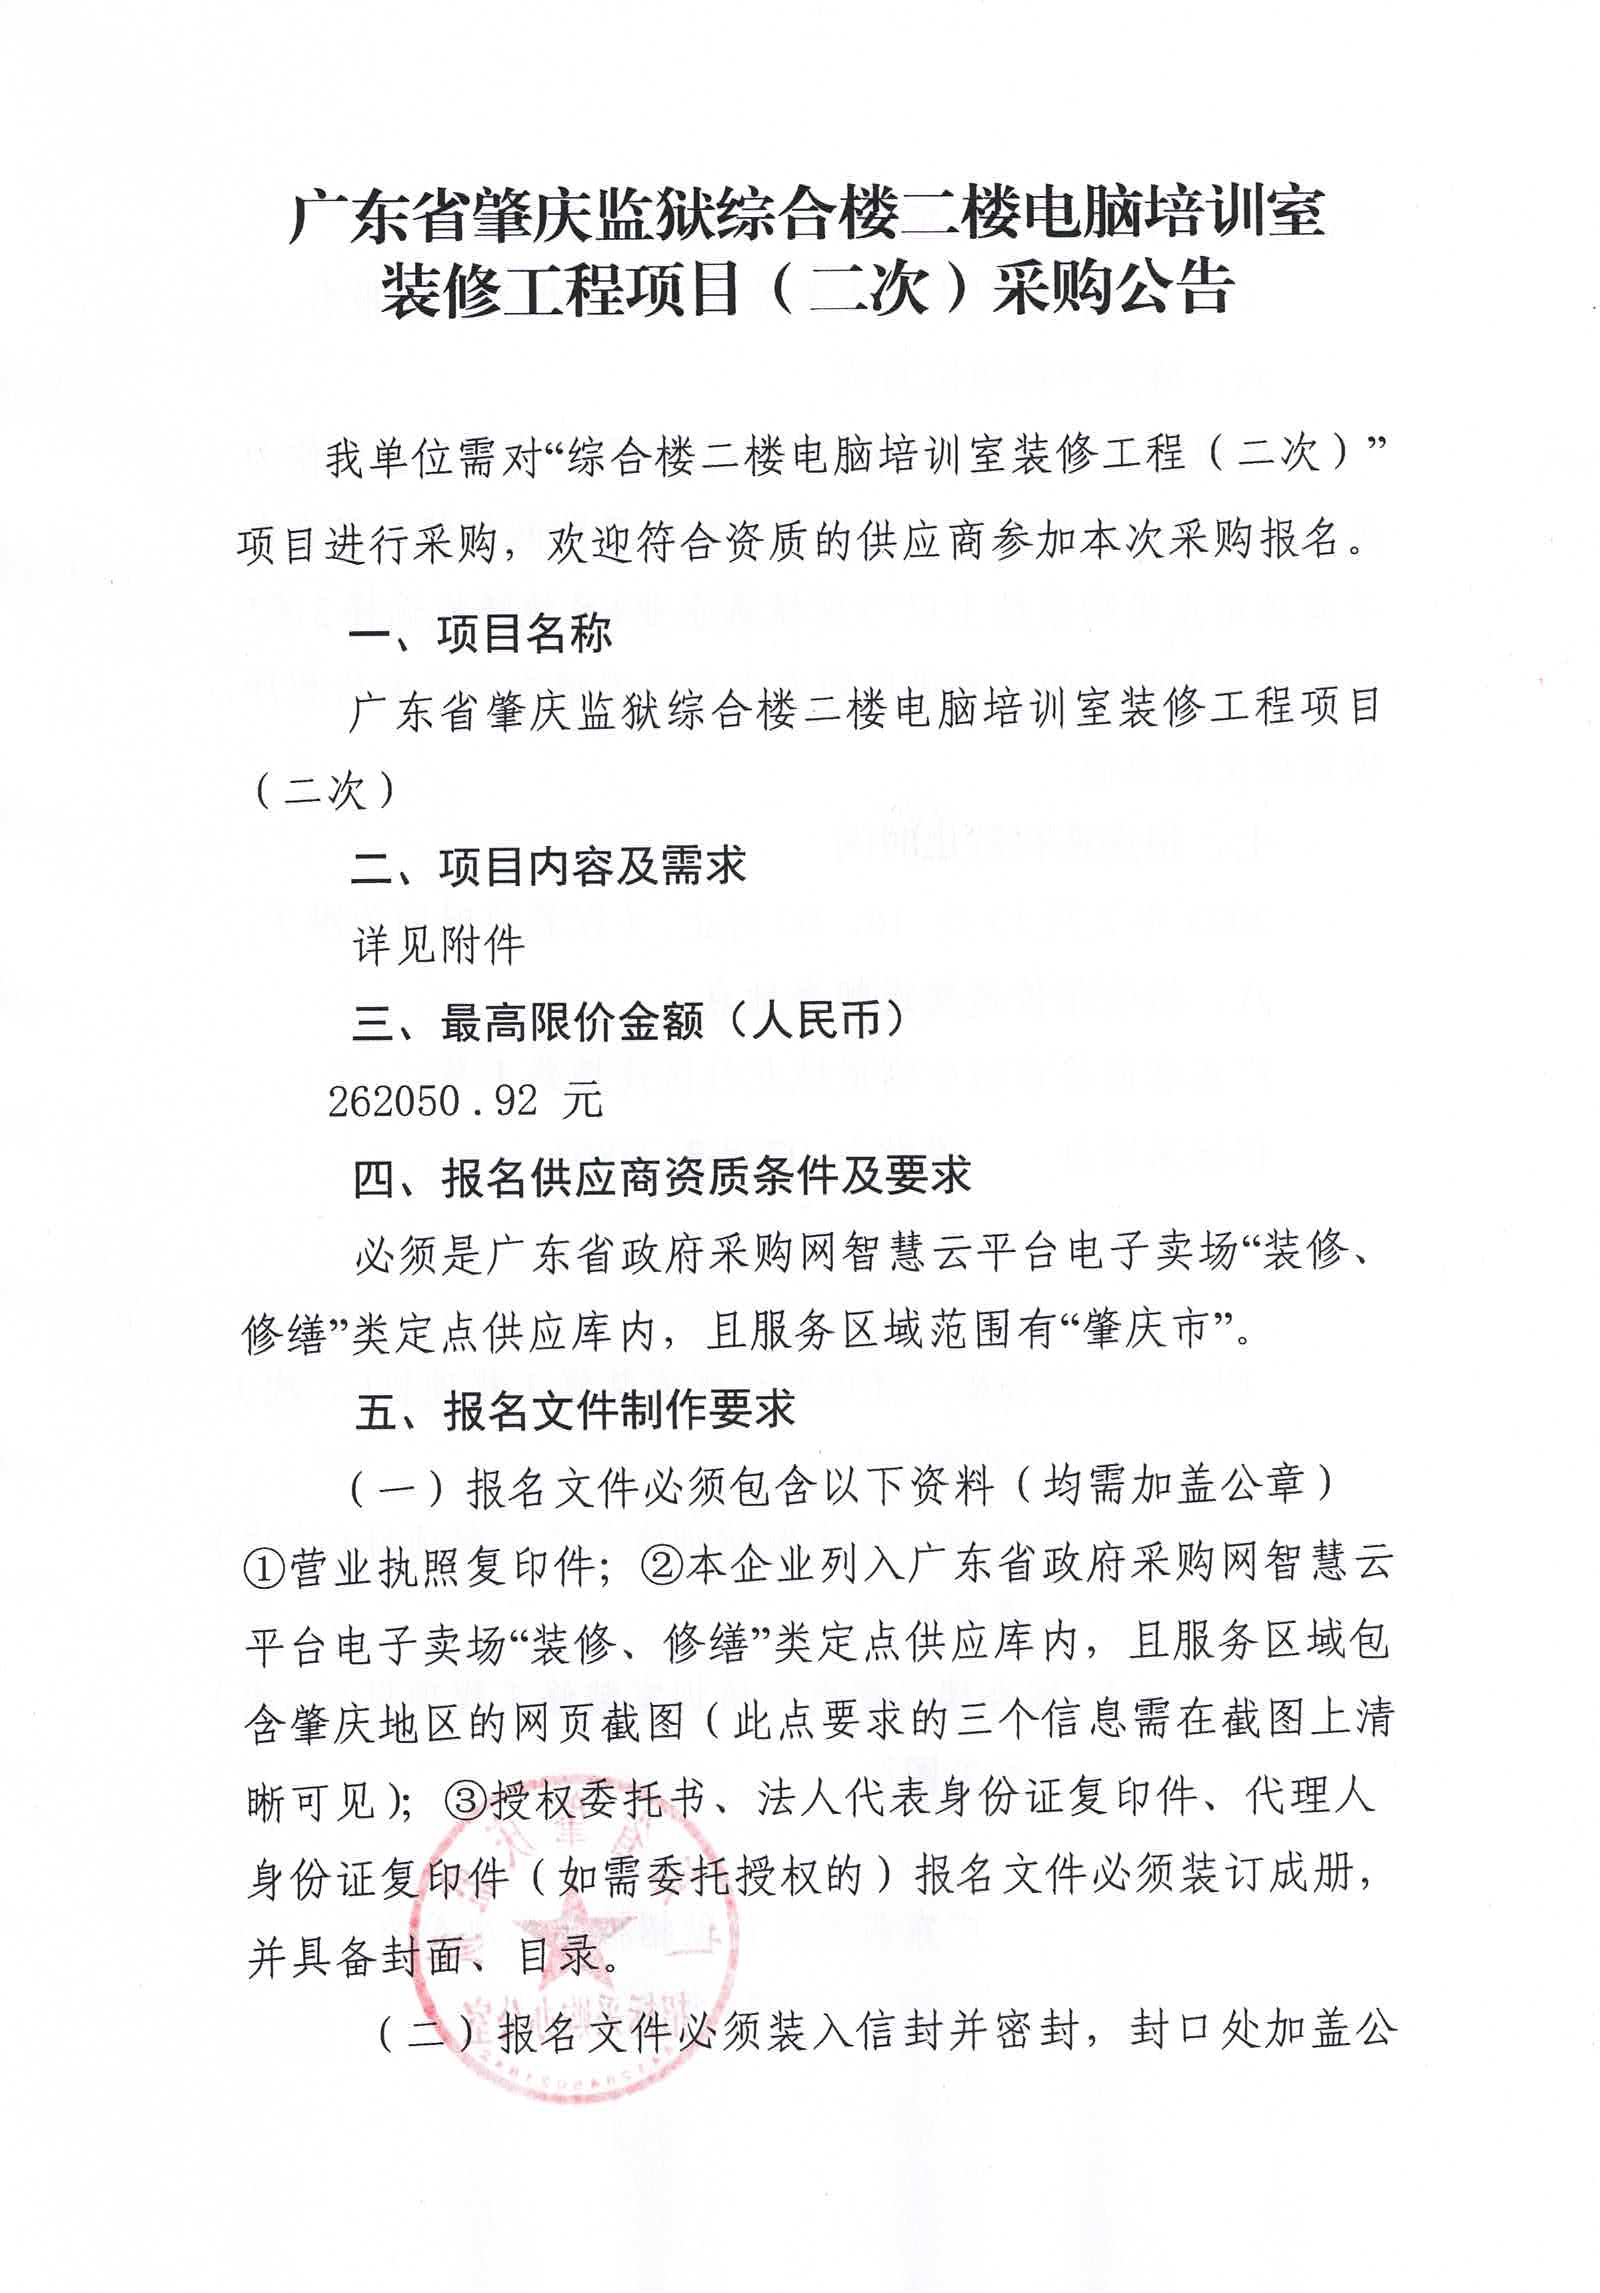 广东省肇庆监狱综合楼二楼电脑培训室装修工程项目（二次）采购公告1.jpg